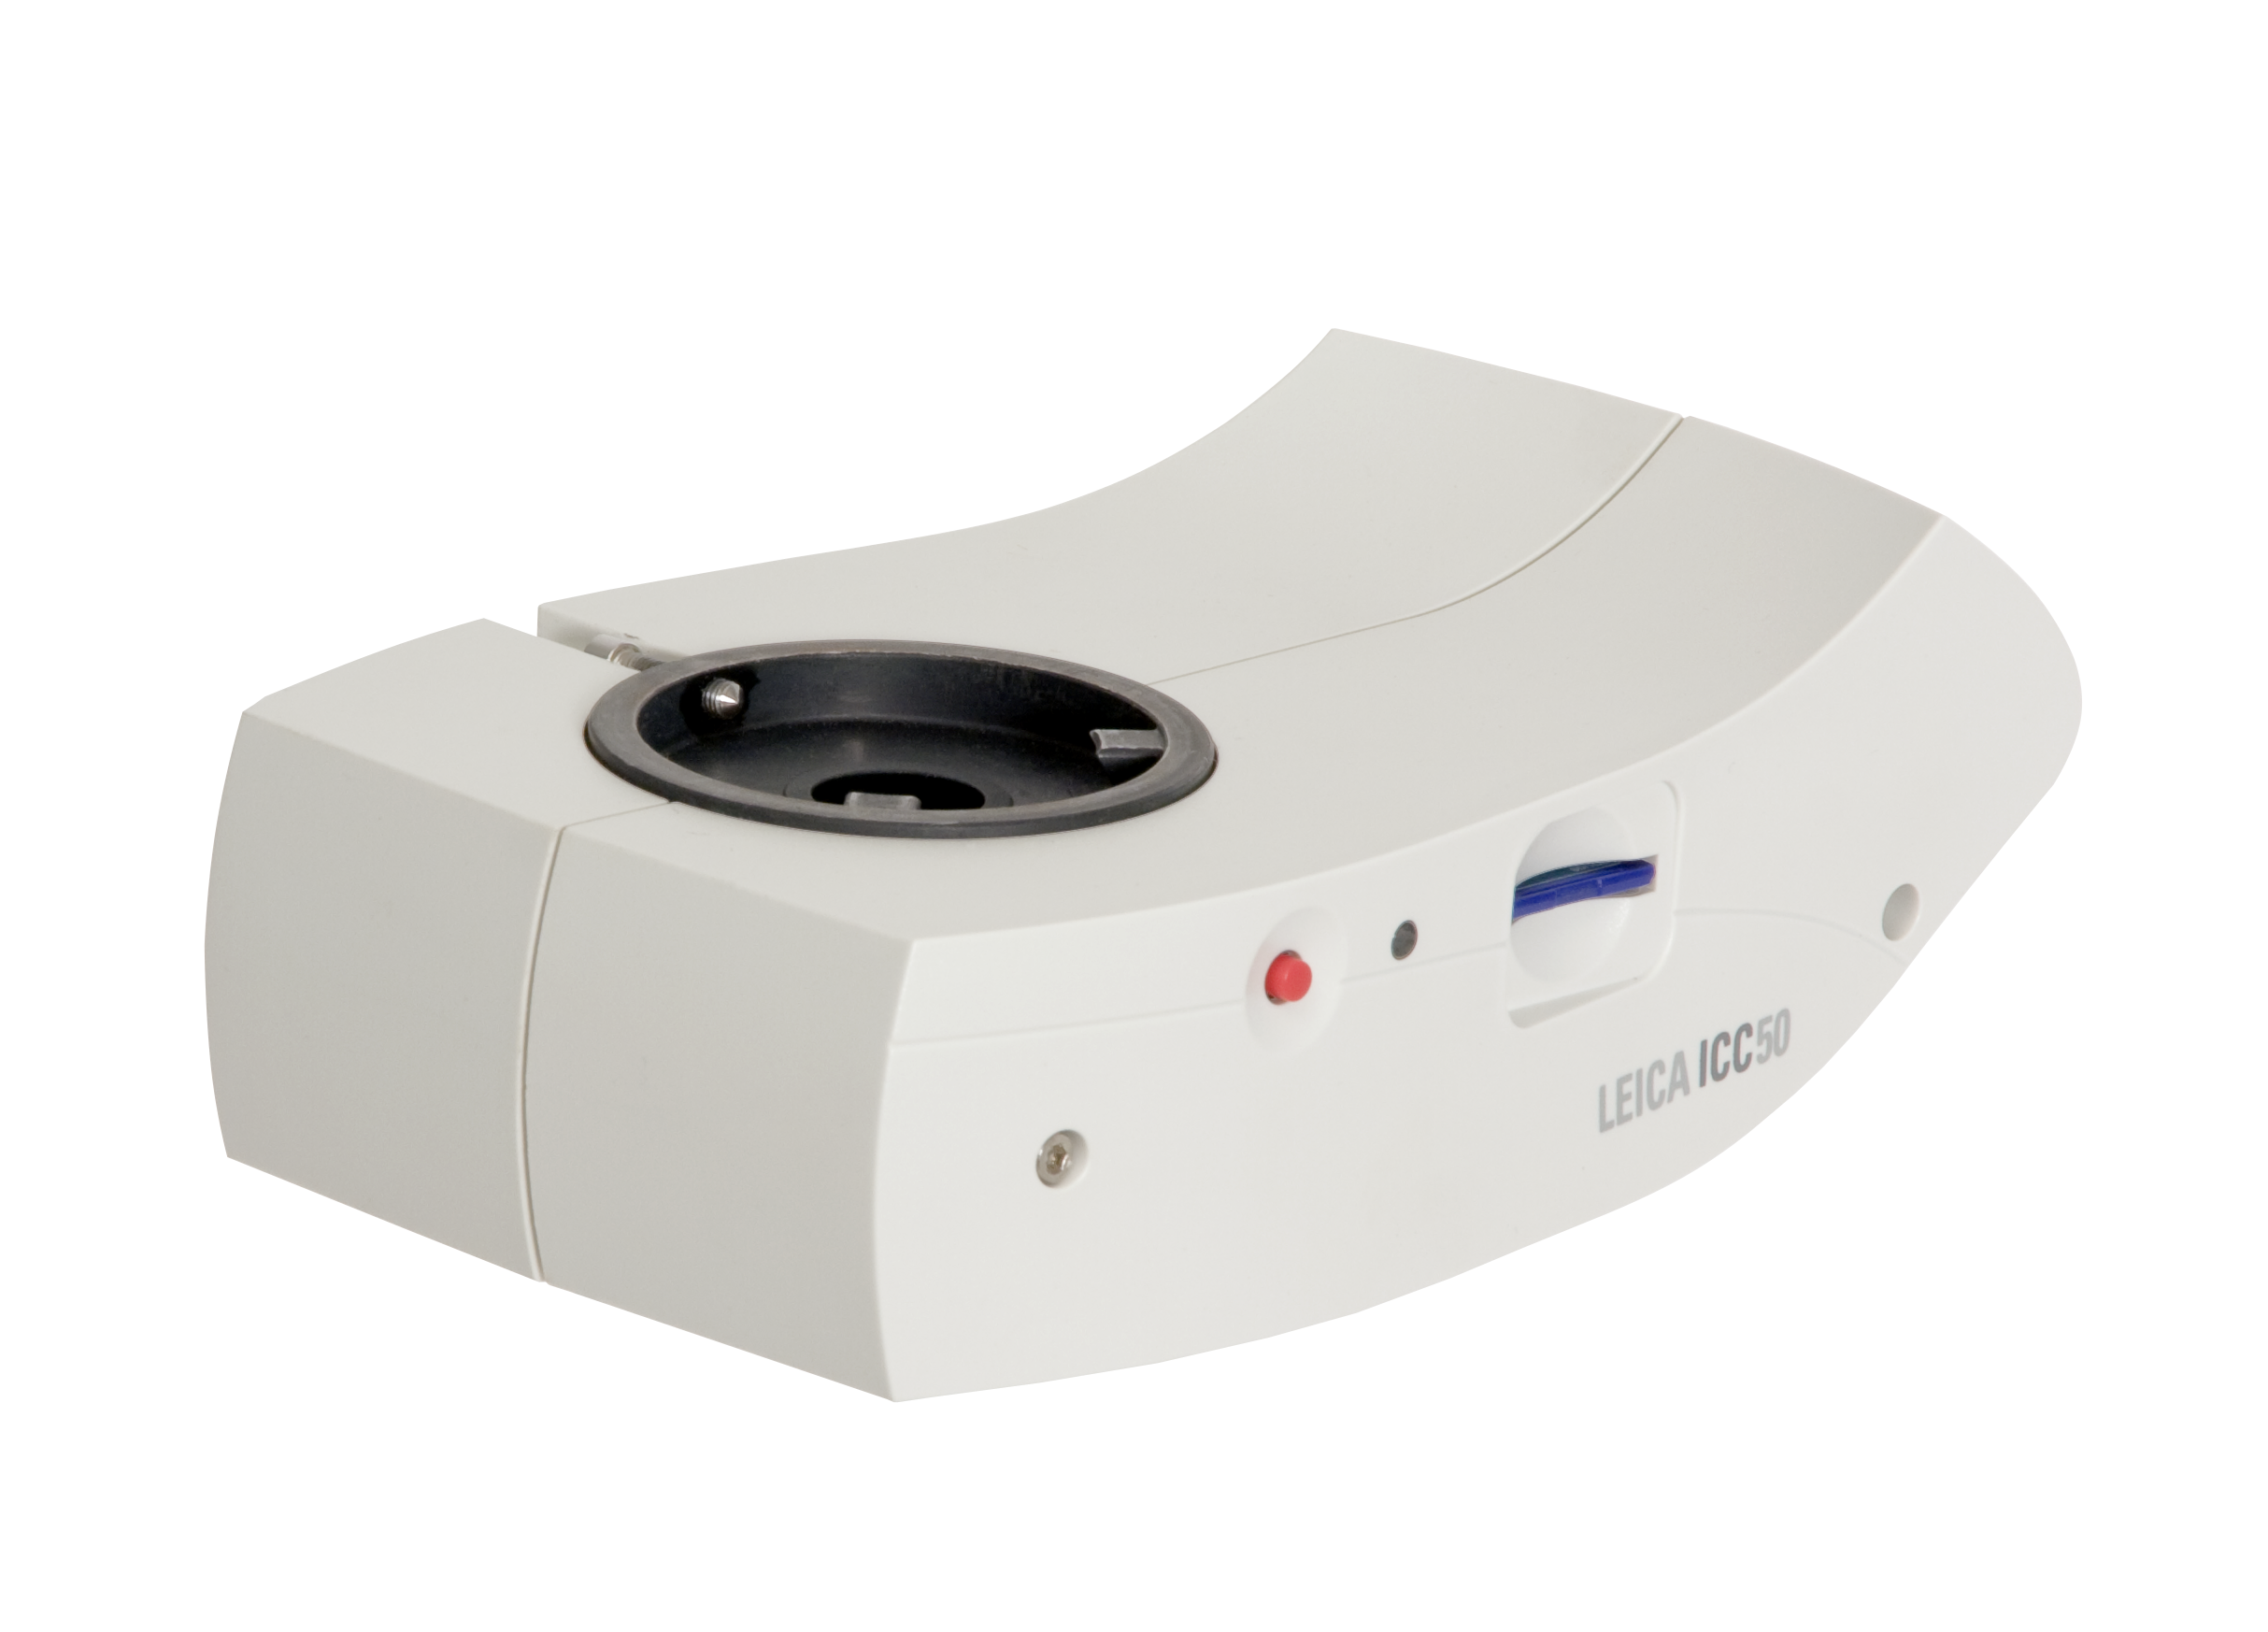 Fotocamera Leica ICC50 per condividere, catturare e archiviare immagini con un potente sistema con fotocamera integrata.